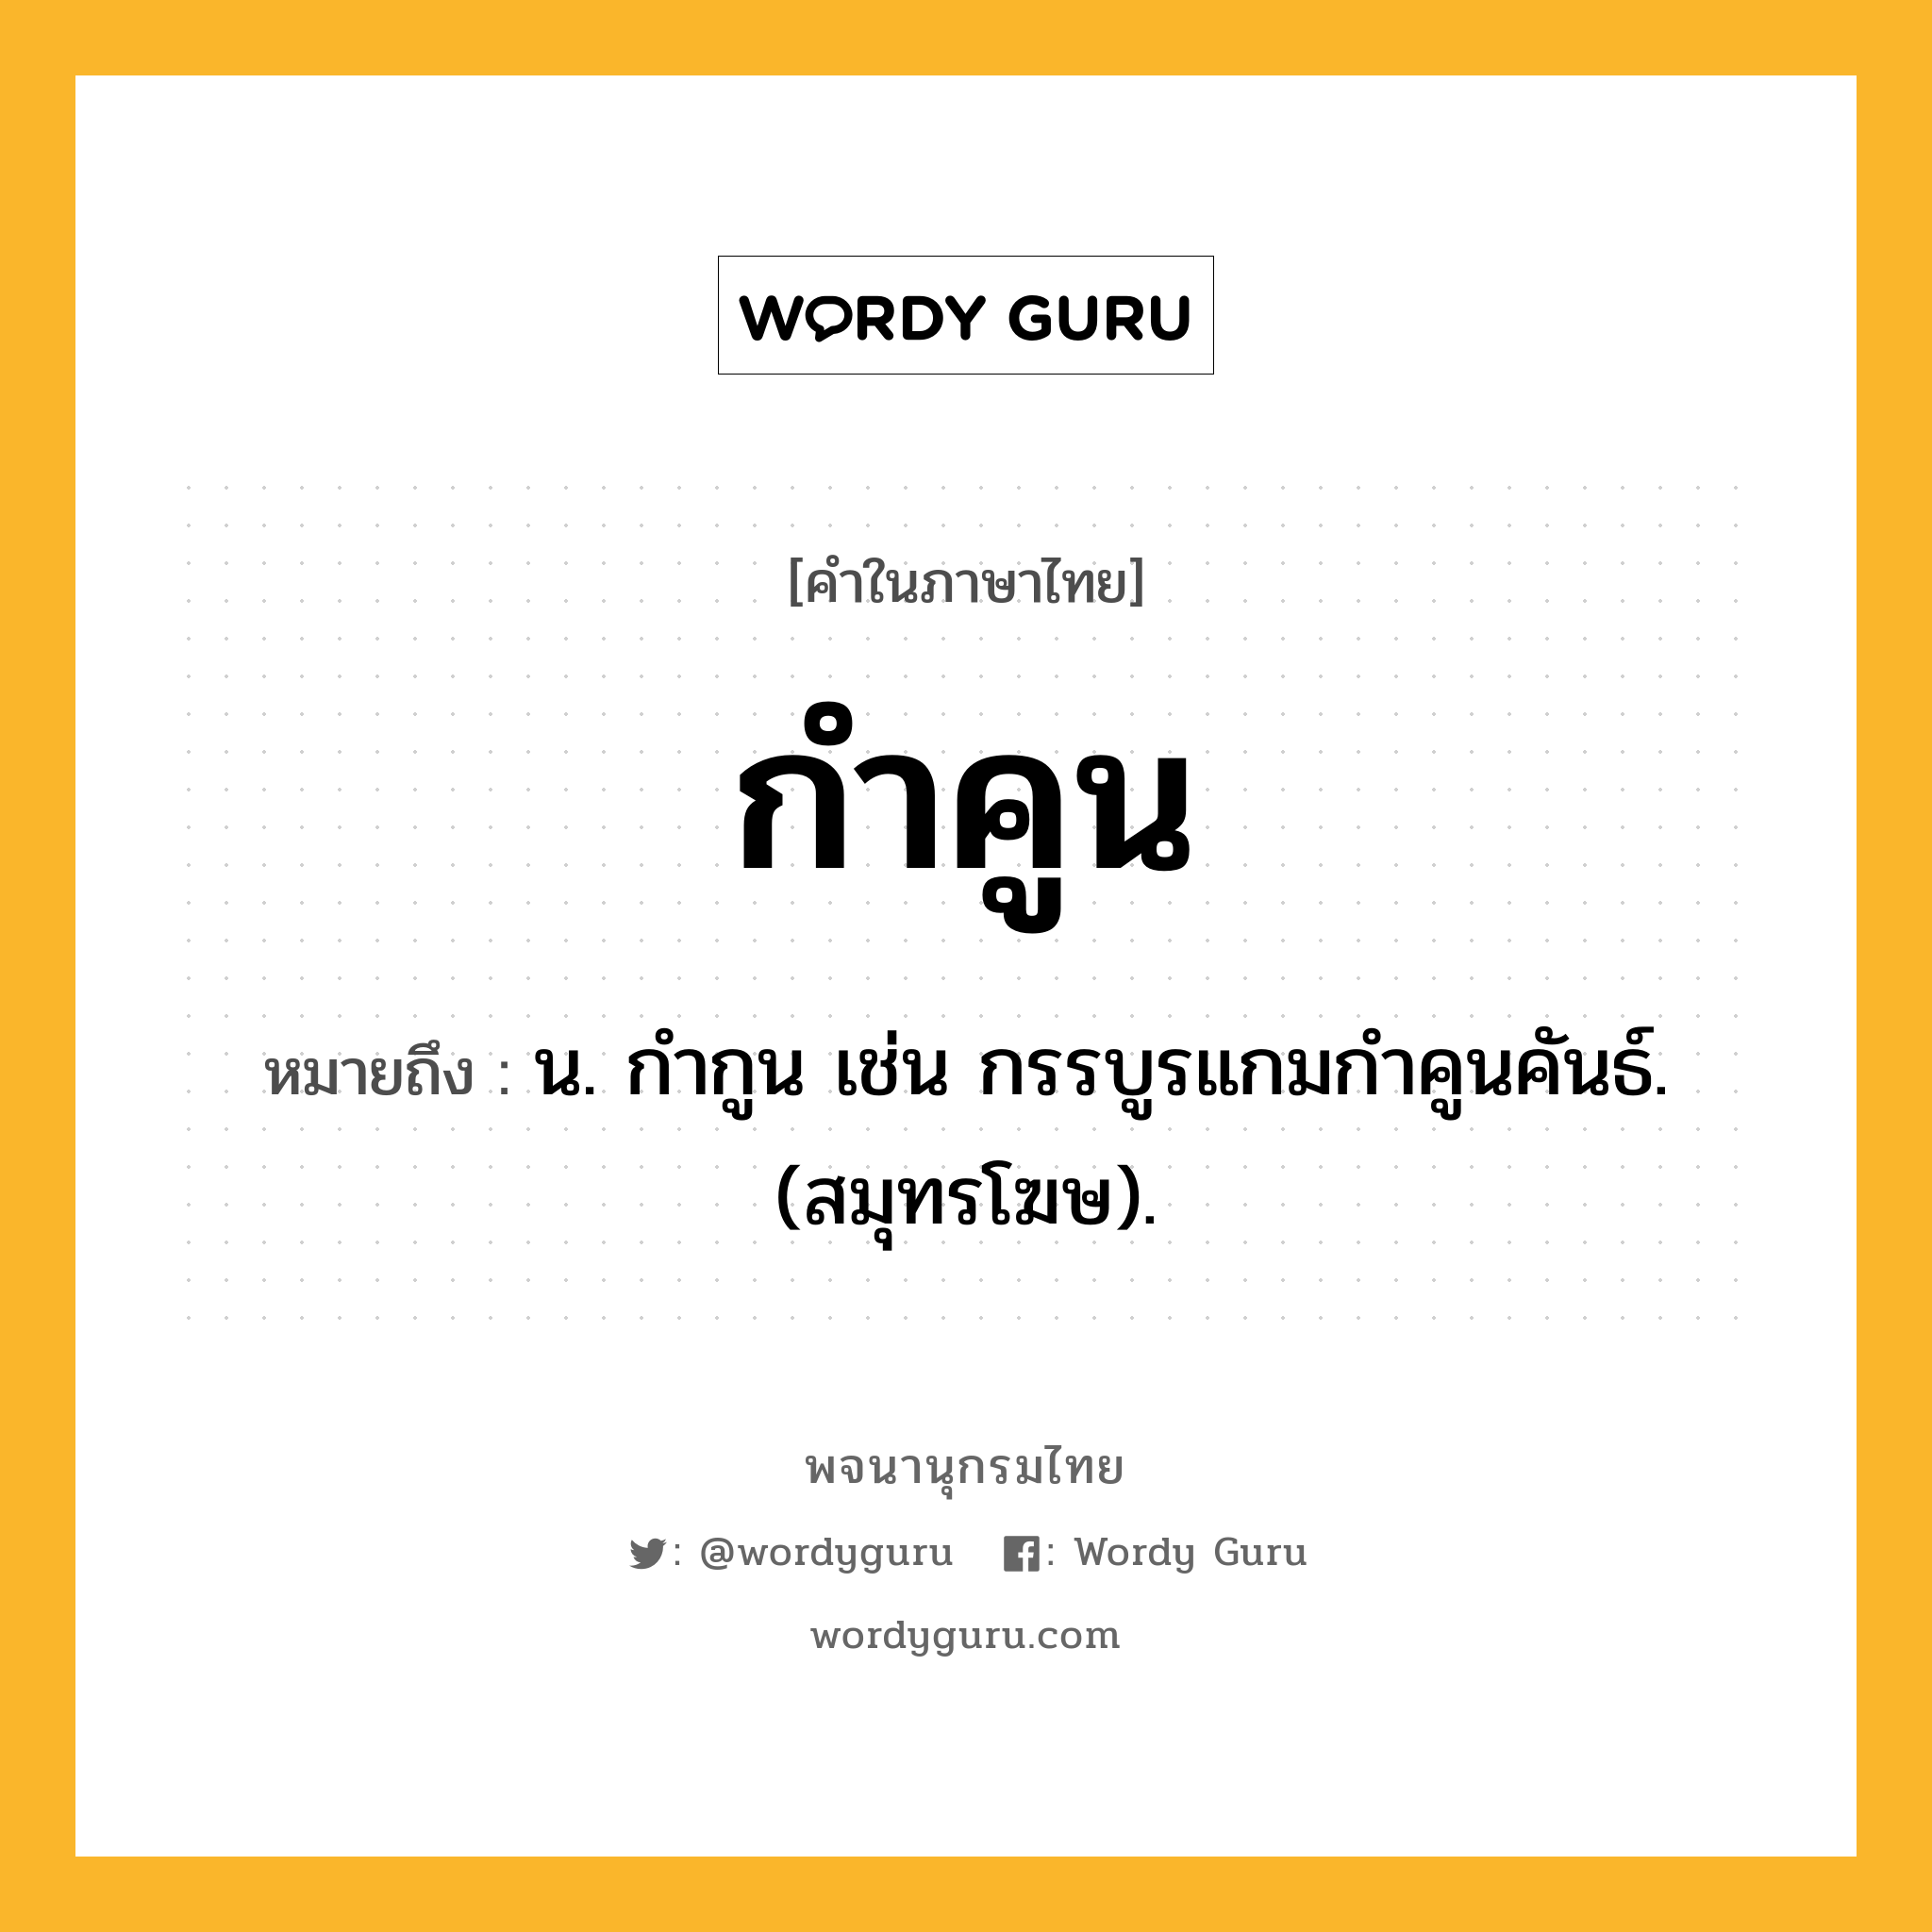 กำคูน หมายถึงอะไร?, คำในภาษาไทย กำคูน หมายถึง น. กํากูน เช่น กรรบูรแกมกําคูนคันธ์. (สมุทรโฆษ).